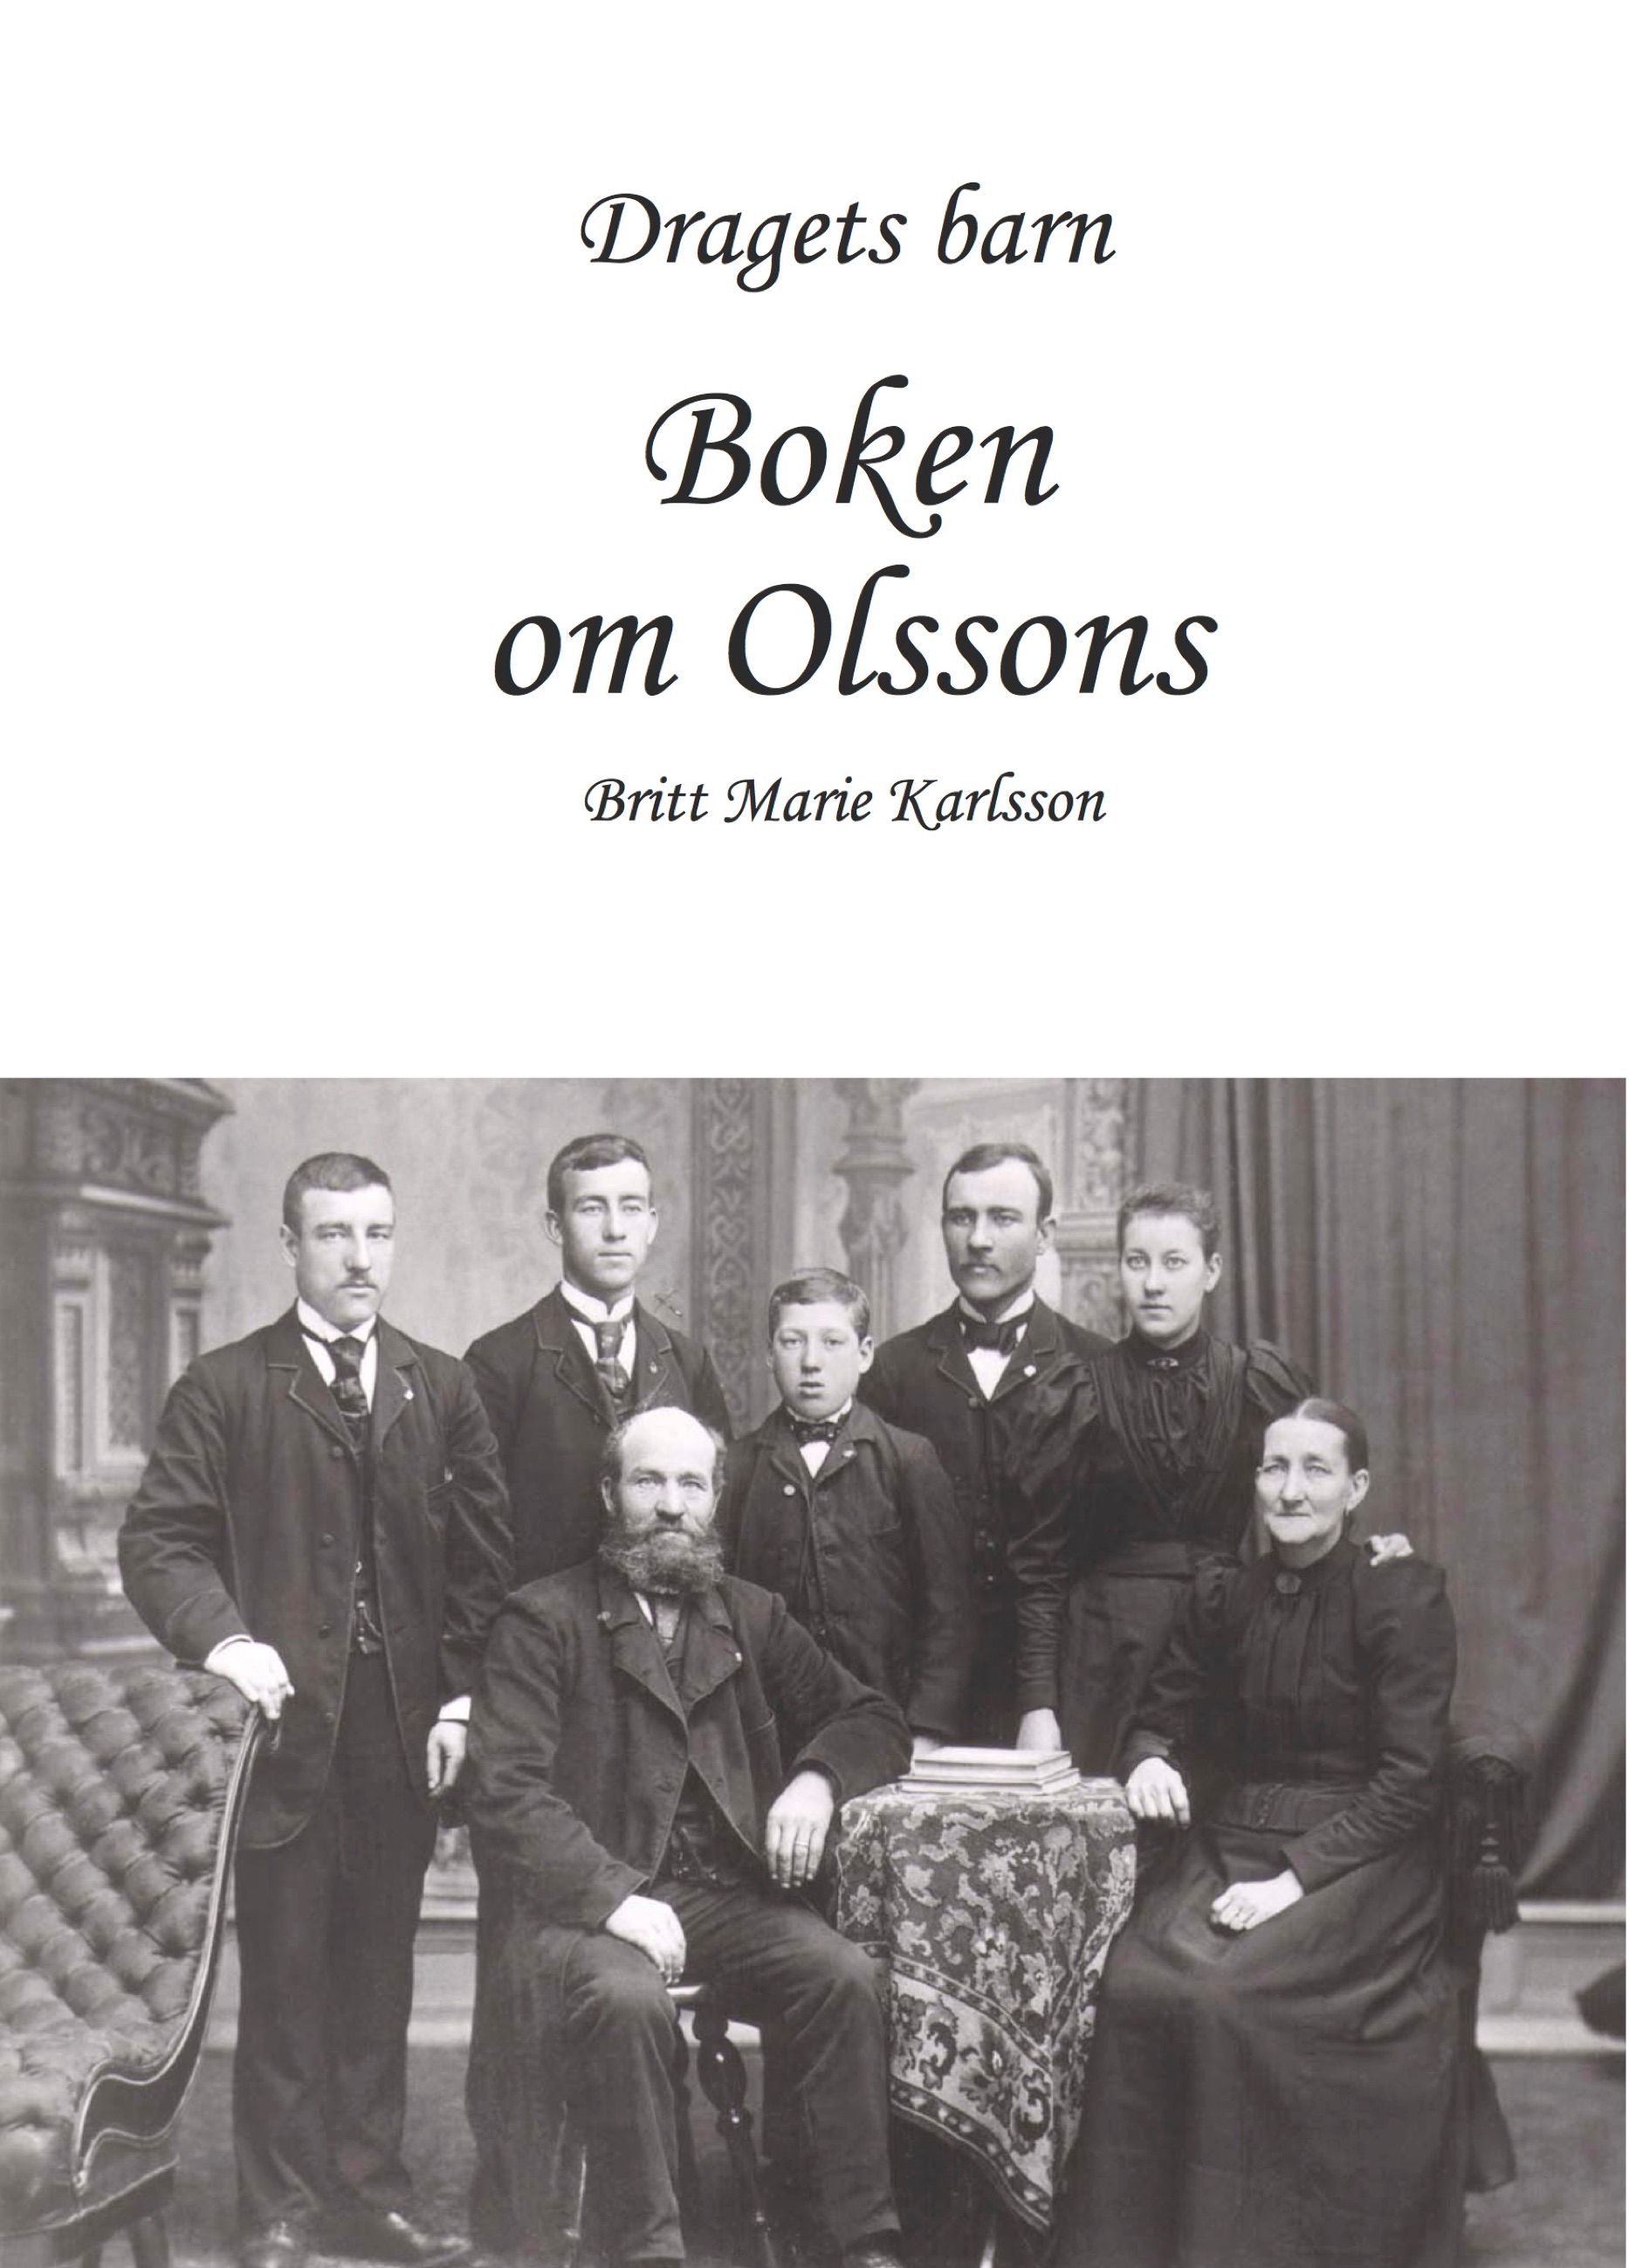 Dragets barn, Boken om Olssons, e-bok av Brittmarie Karlsson